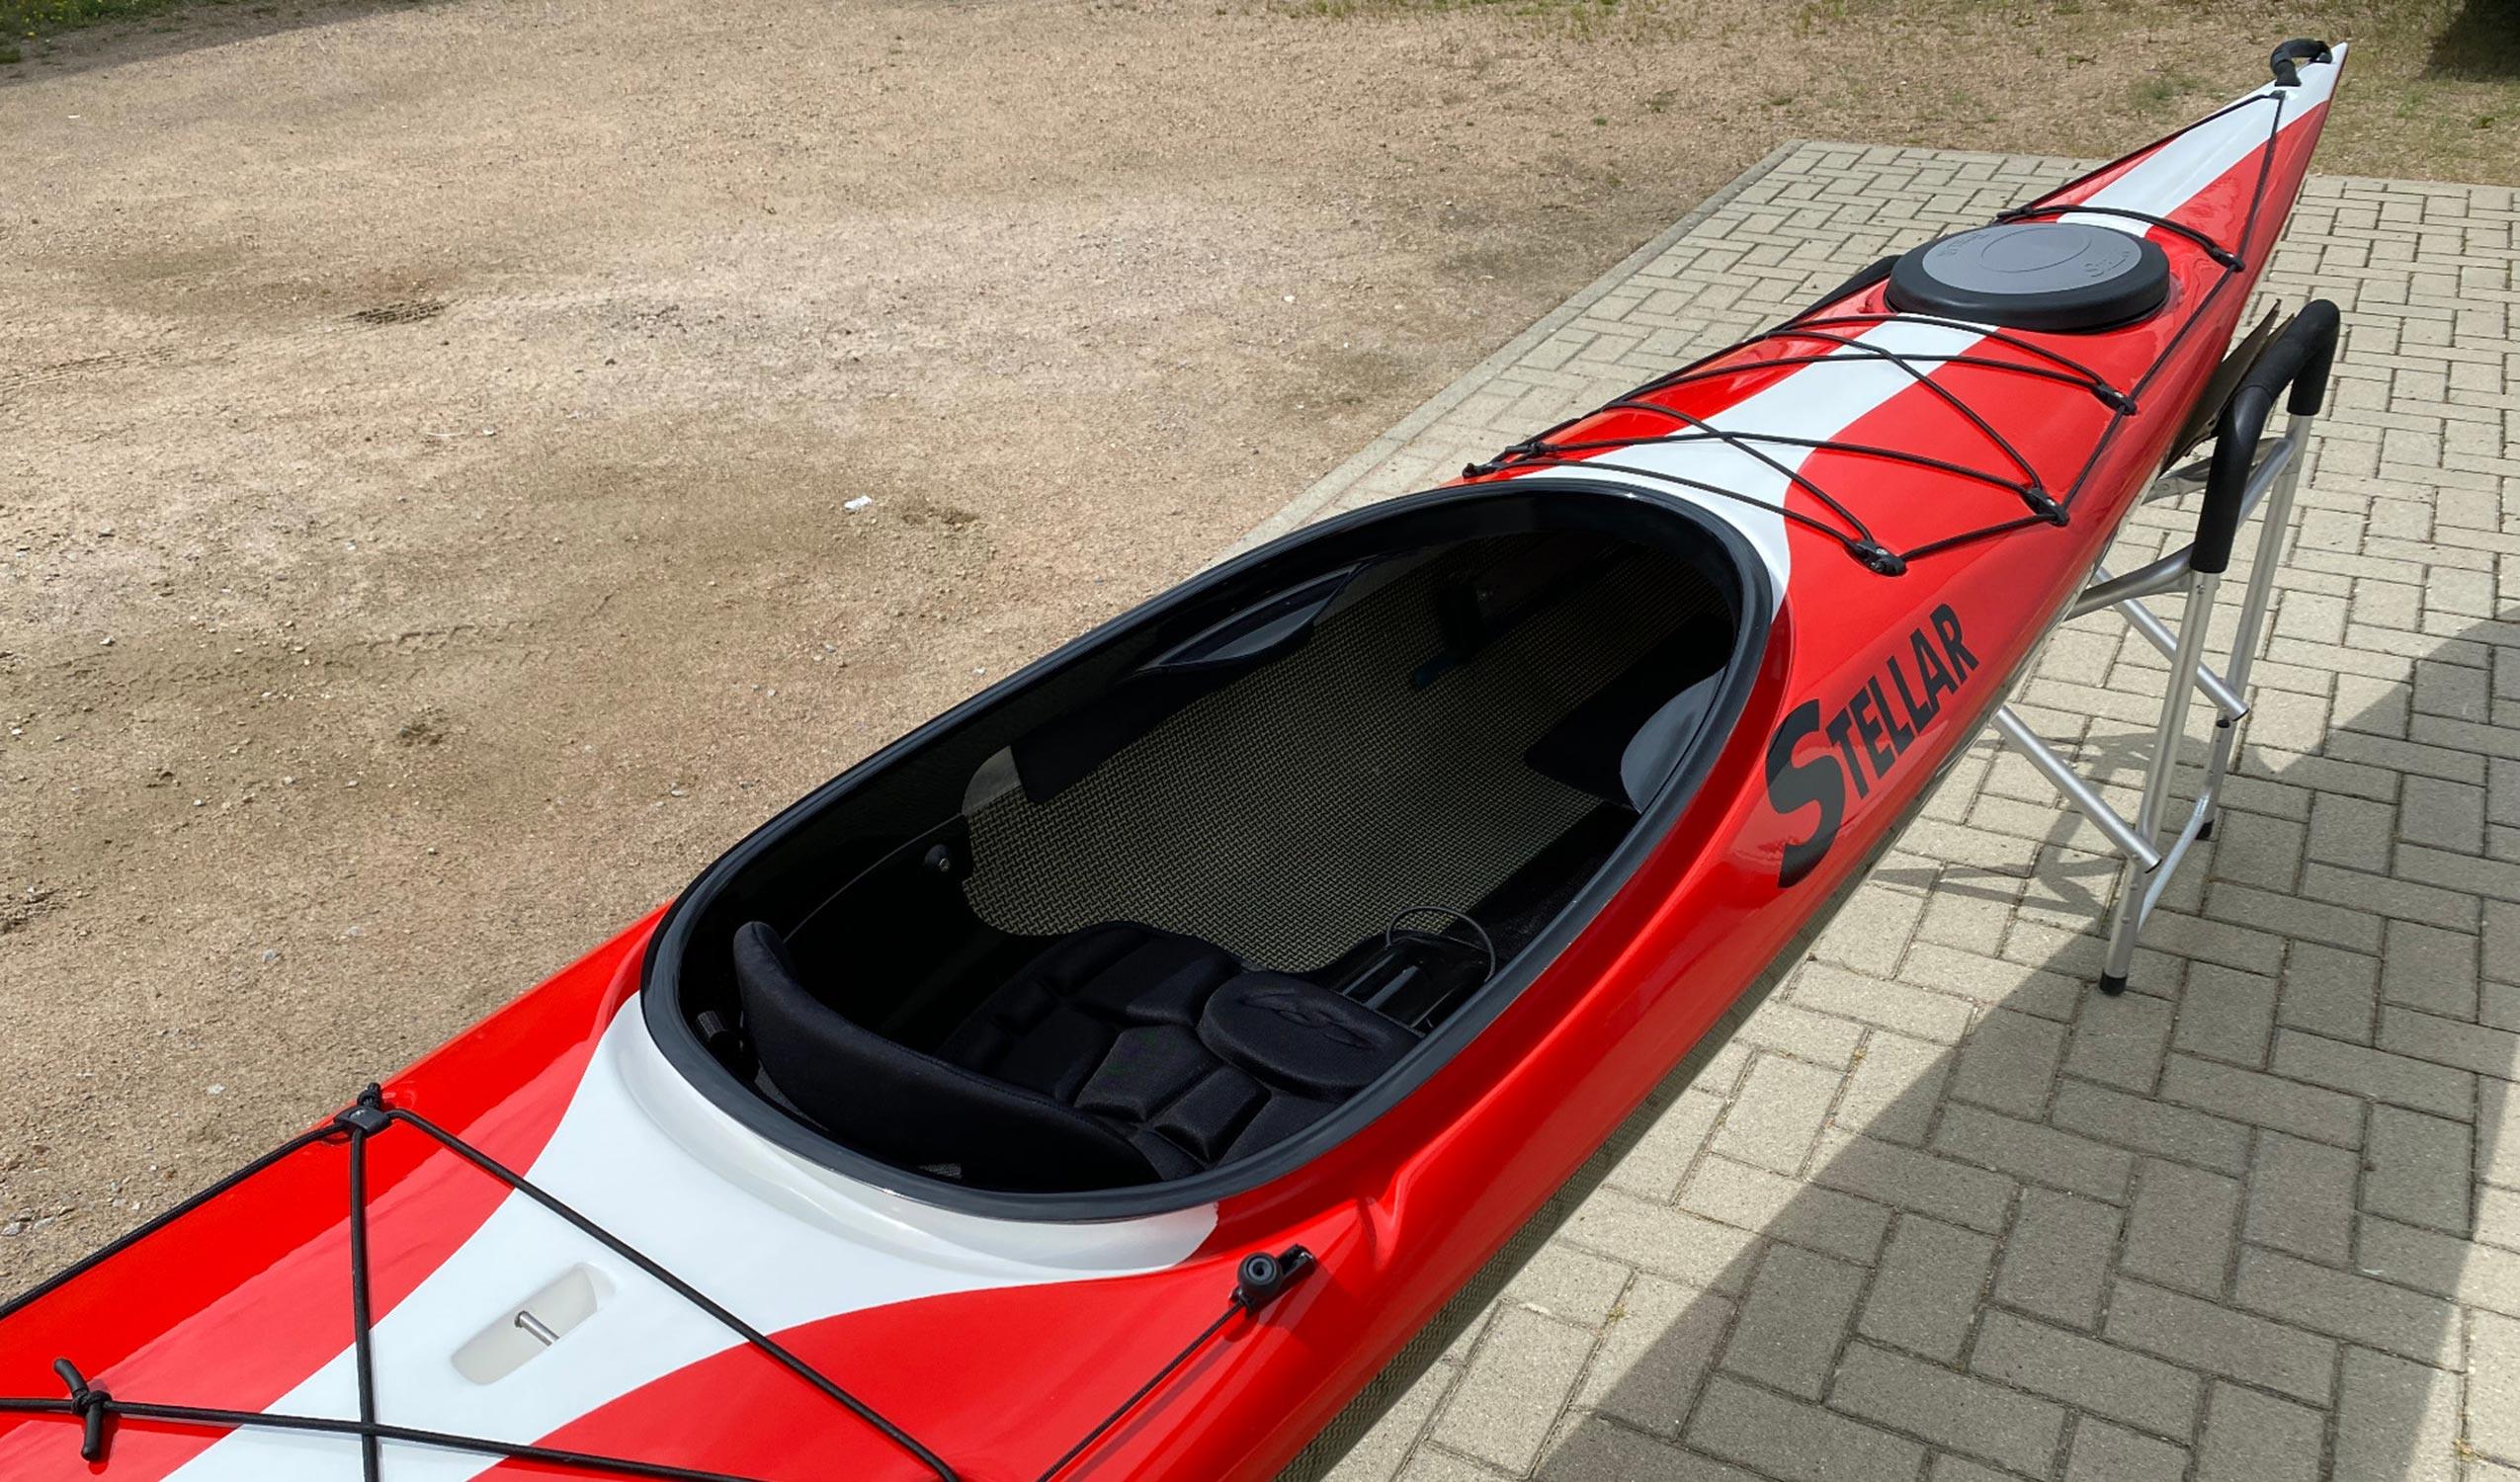 Produktbild von Kajak " S15LV Multisport-rot weiß " der Marke STELLAR Lightweight für 3240.00 €. Erhältlich online bei Lite Venture ( www.liteventure.de )